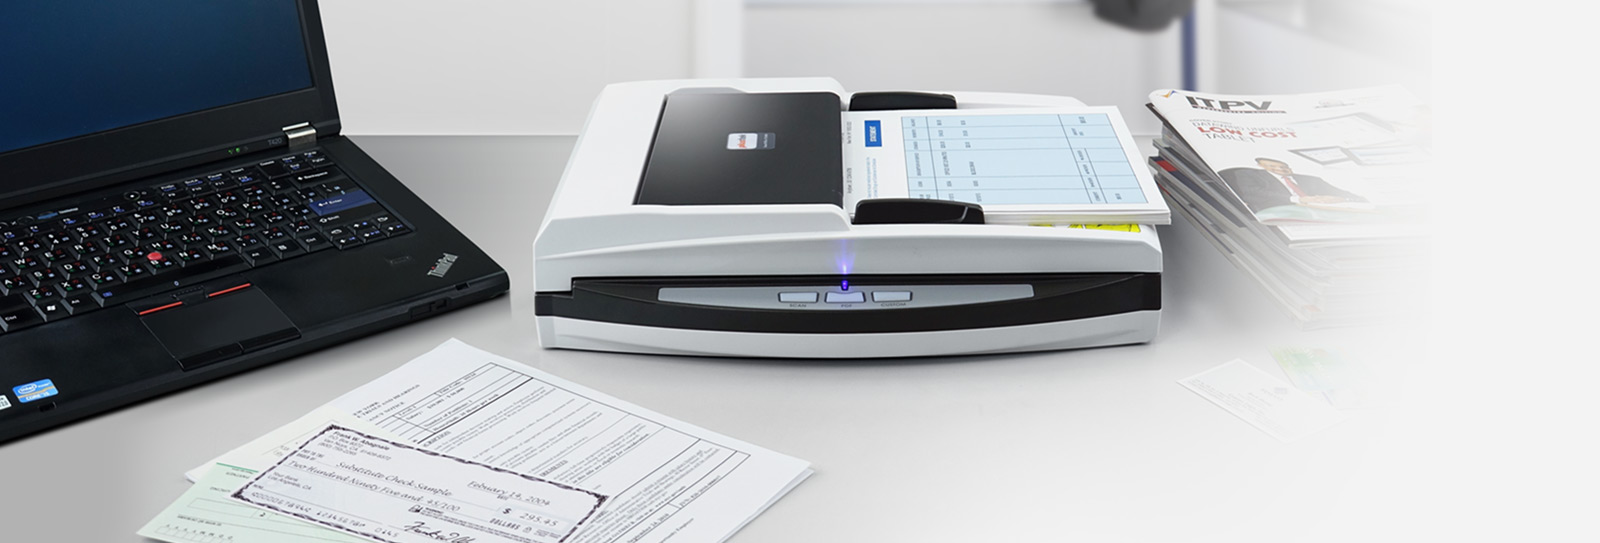 Plustek Ofrece Este Escáner Para Las Oficinas Que Necesitan Escanear